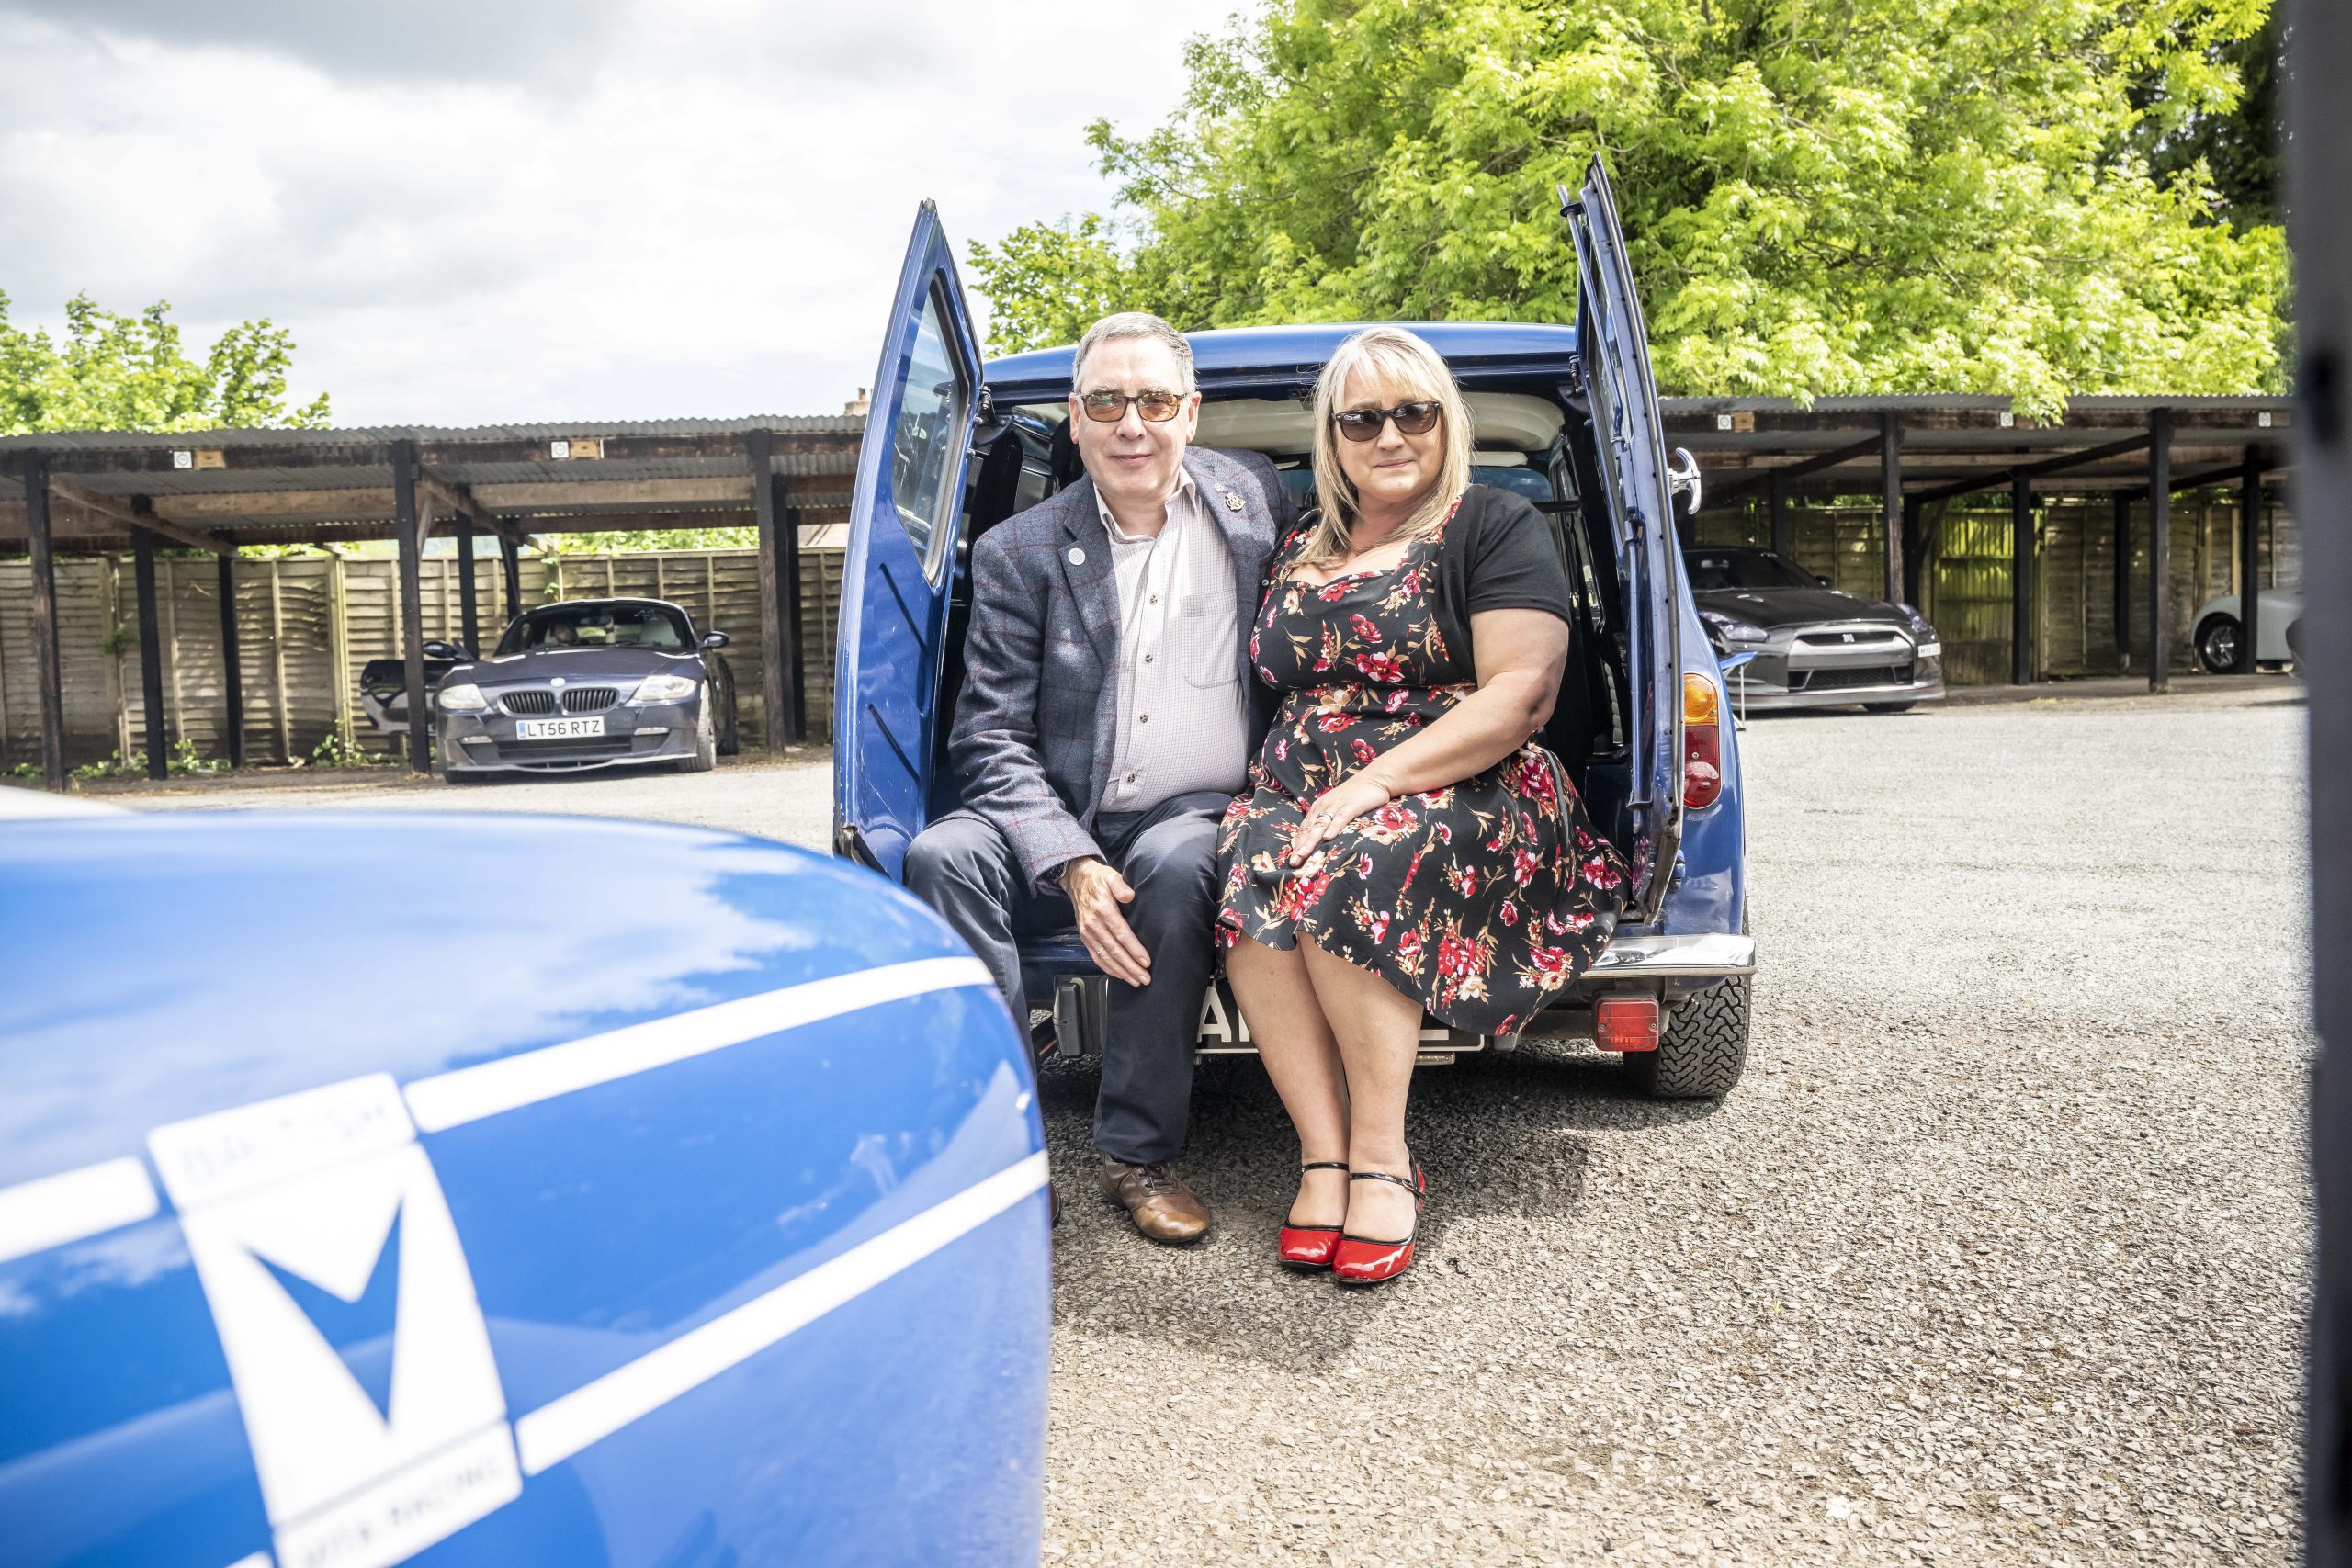 Ian and Adele Hunt's Mini van racer